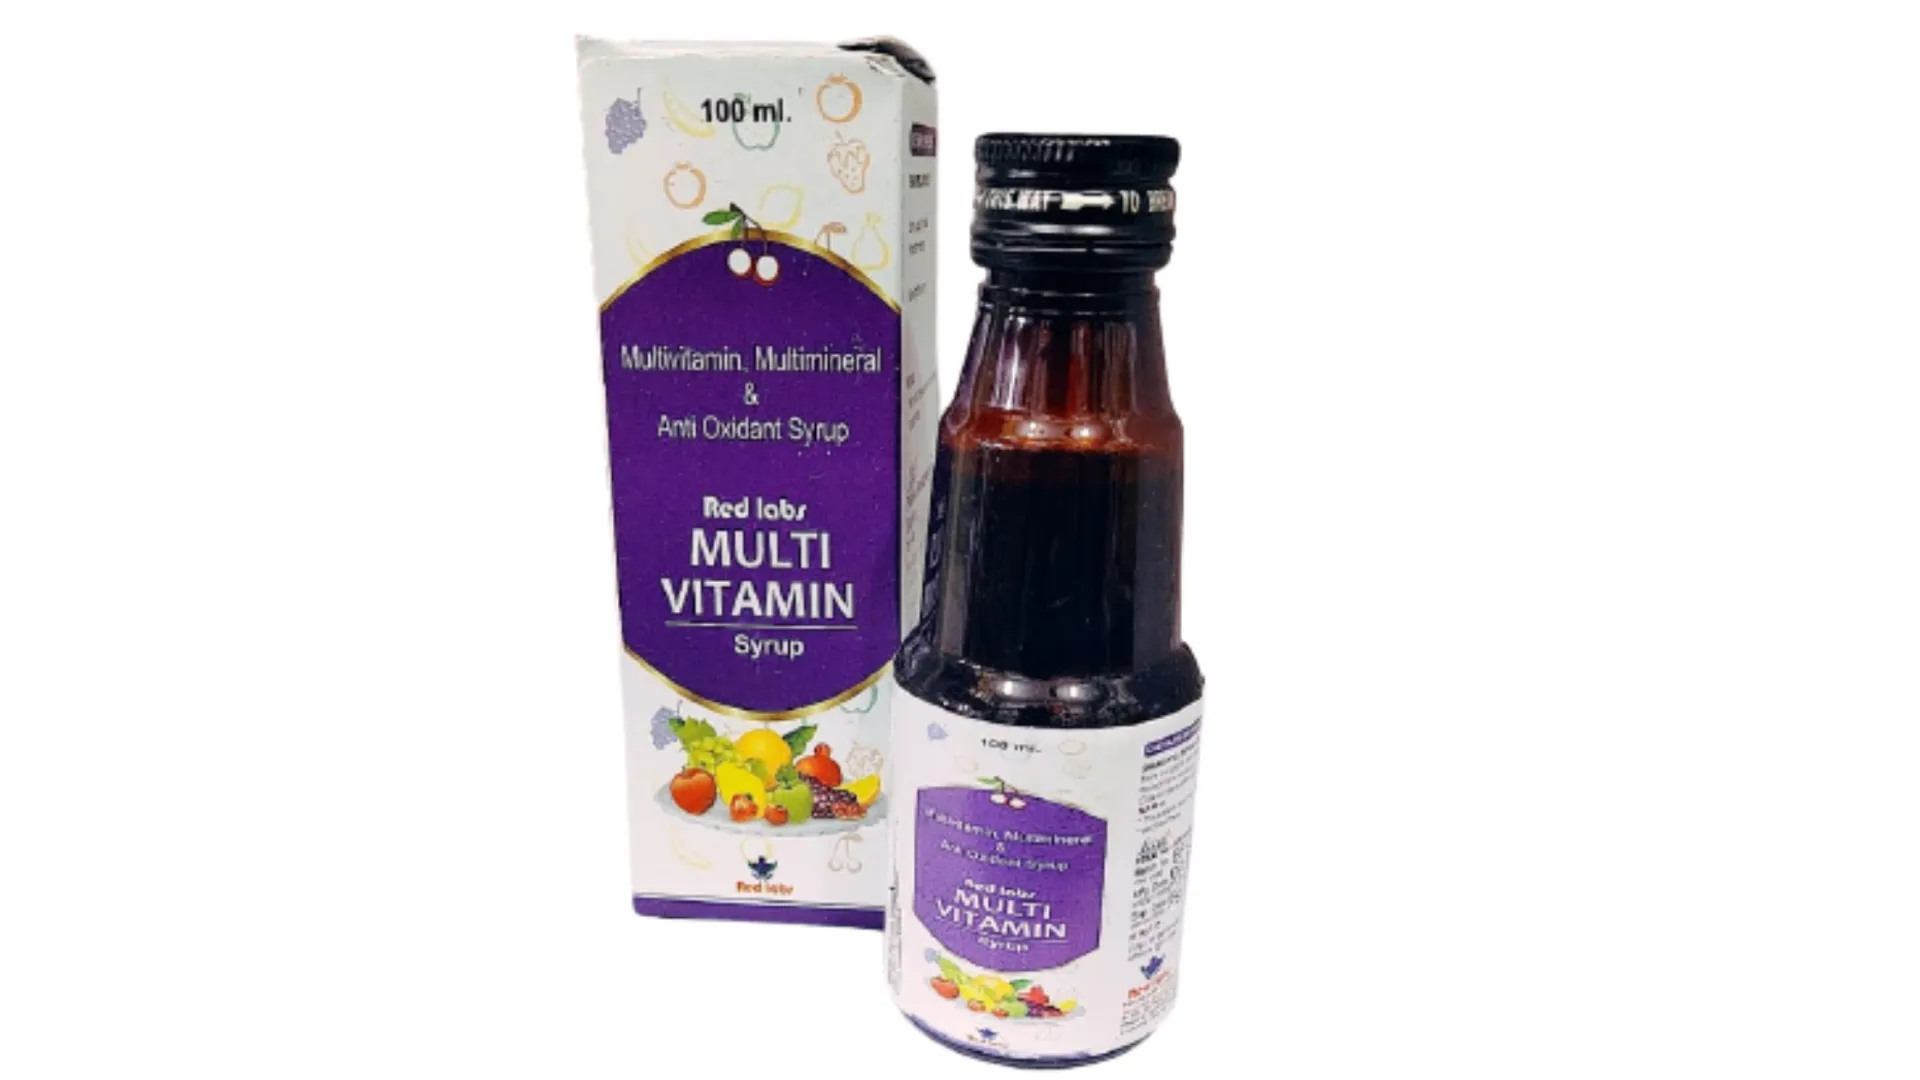 Multivitamin Multi vitamin syrup Austro lab#2